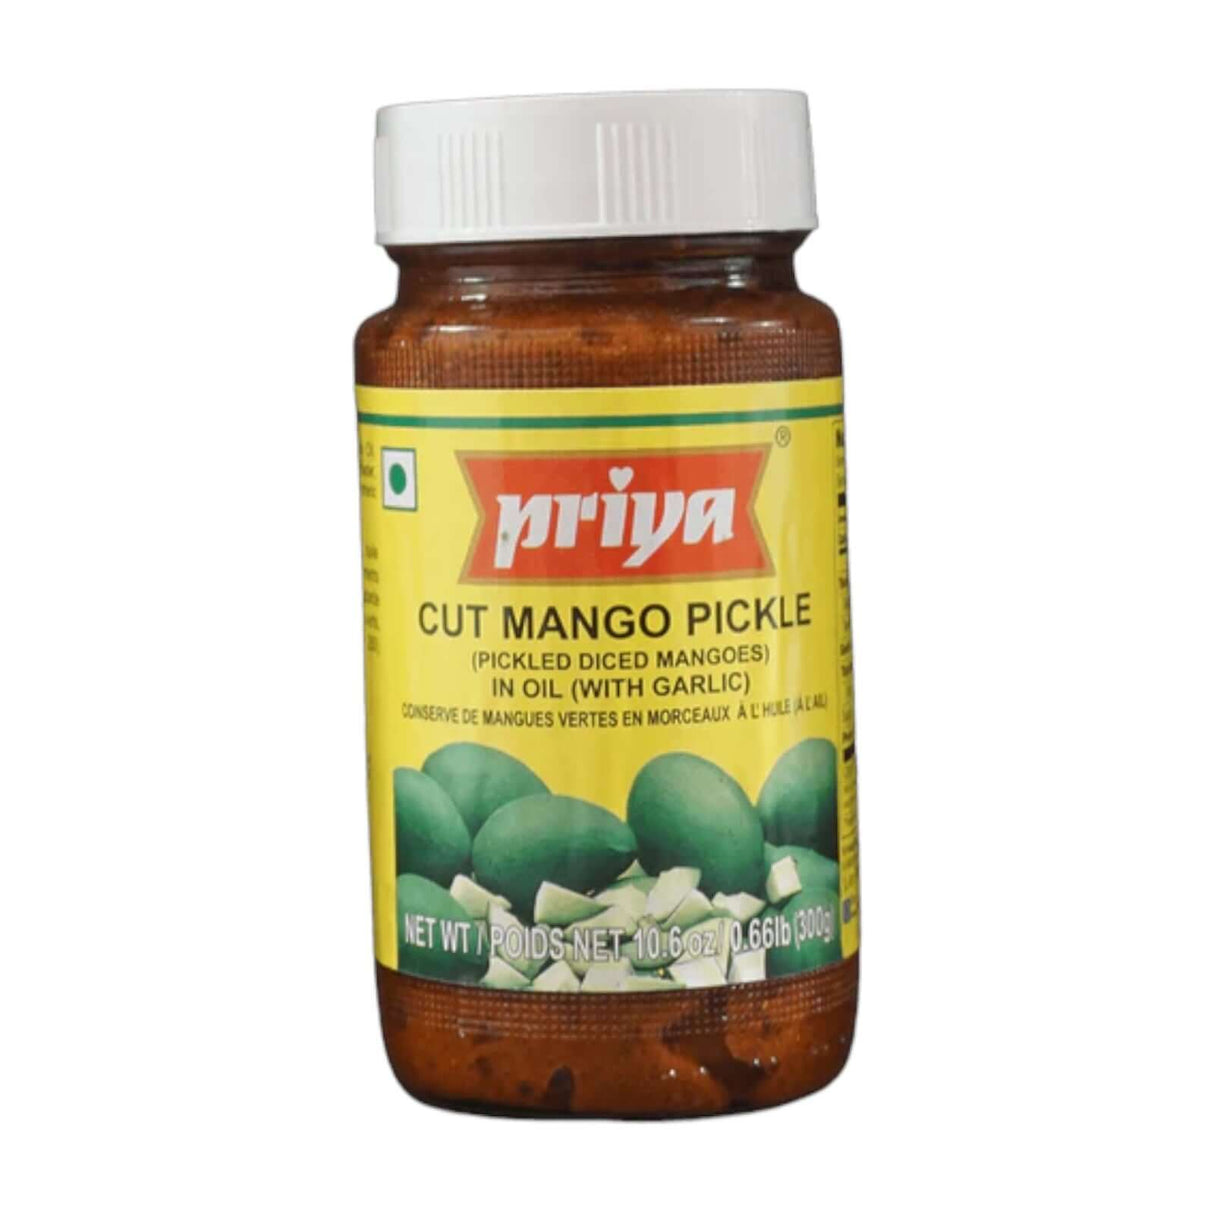 Priya Cut Mango Pickle in Oil  (with Garlic)